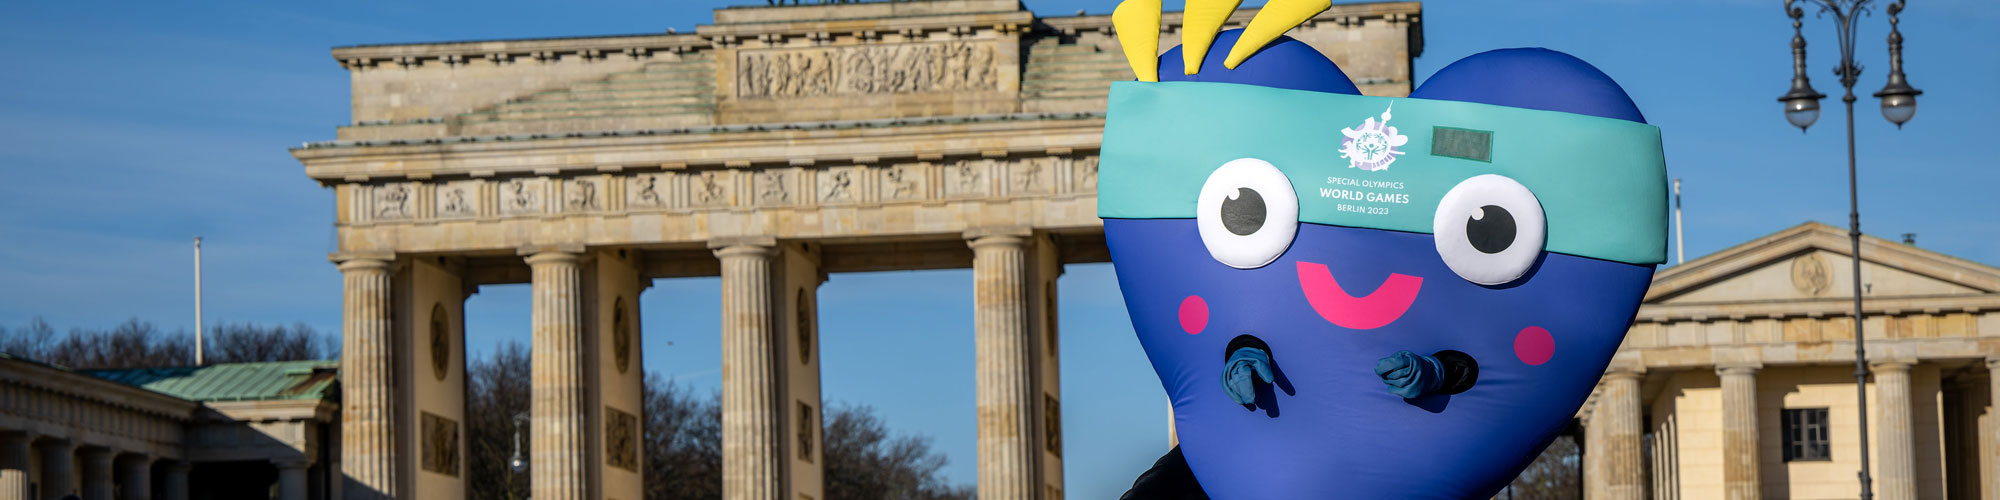 Maskottchen Unity am Brandenburger Tor